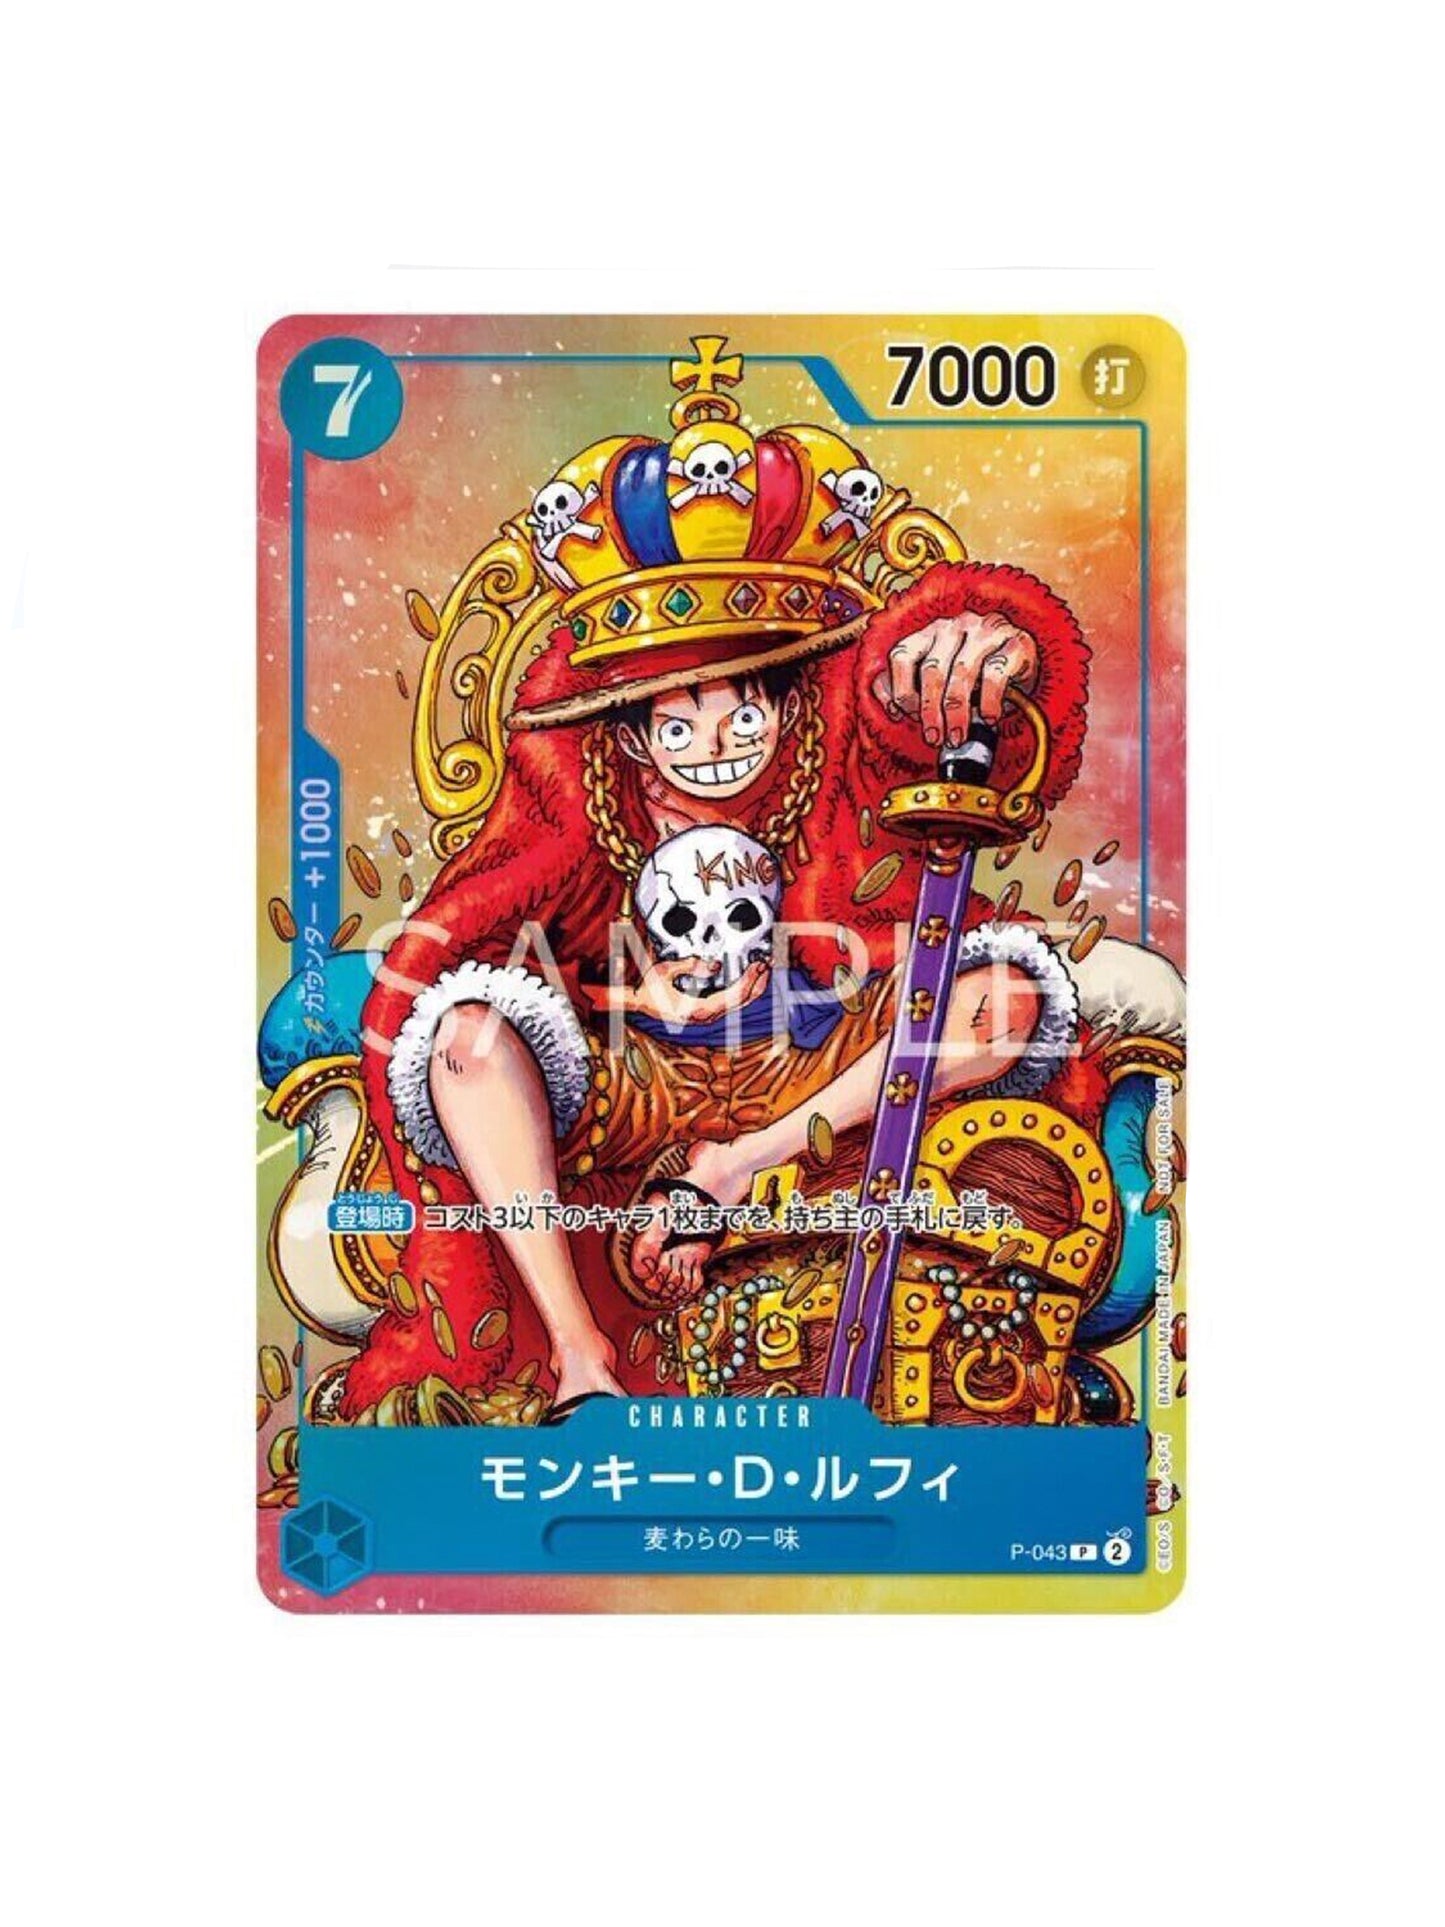 One Piece TCG: Monkey D Luffy P-043 Shonen Jump ONE PIECE Card Jap